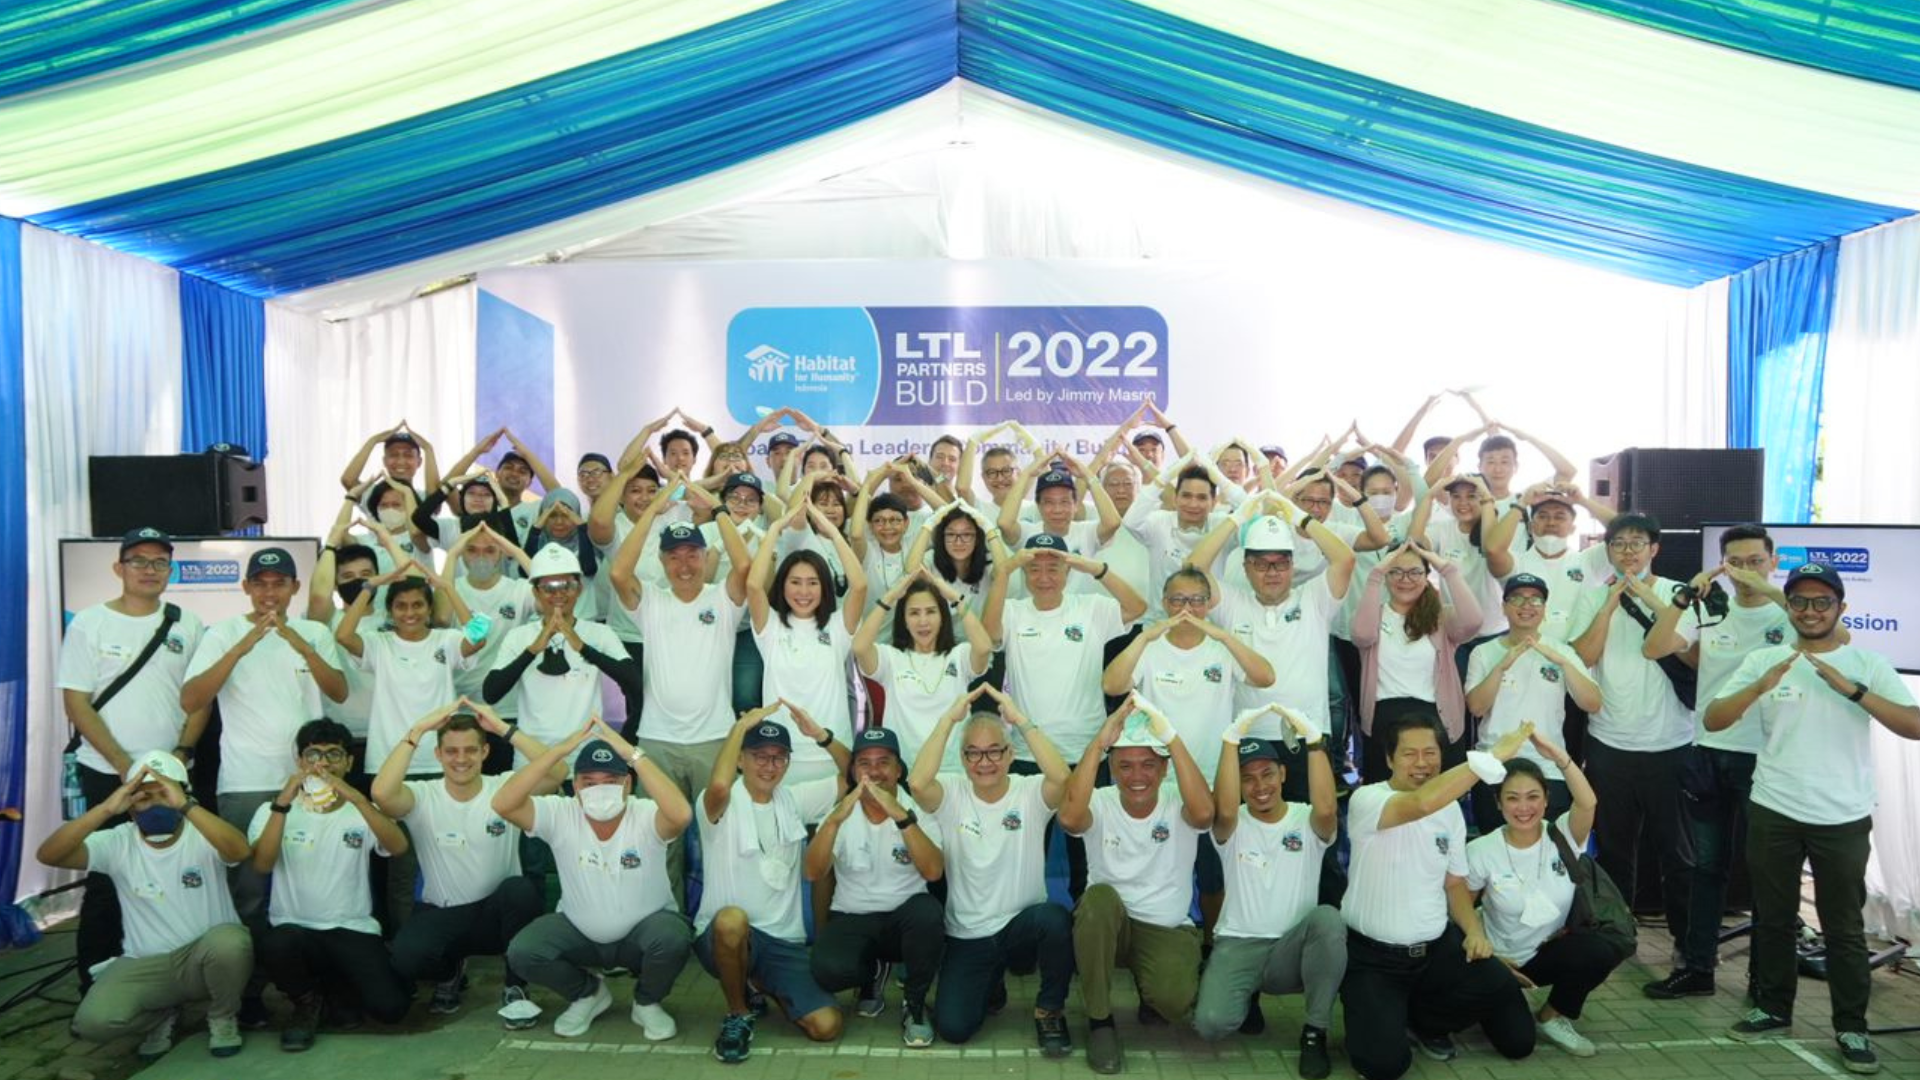 Rayakan Ulang Tahun ke-71 tahun Lautan Luas bersama Habitat Indonesia adakan Lautan Luas and Partners Build